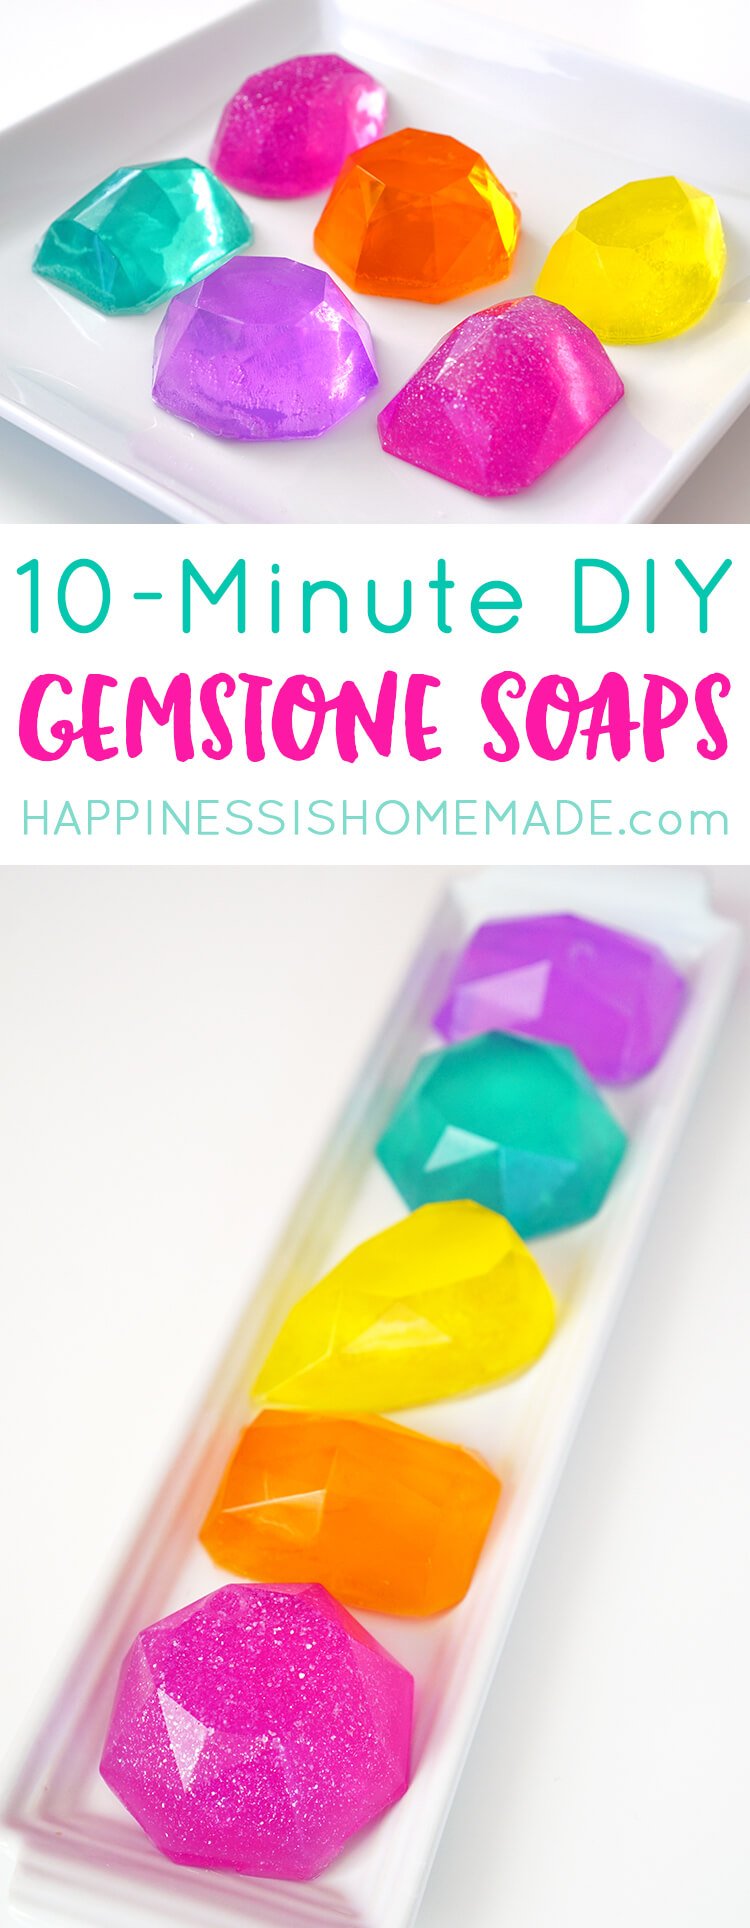 10 minute DIY gemstone soaps